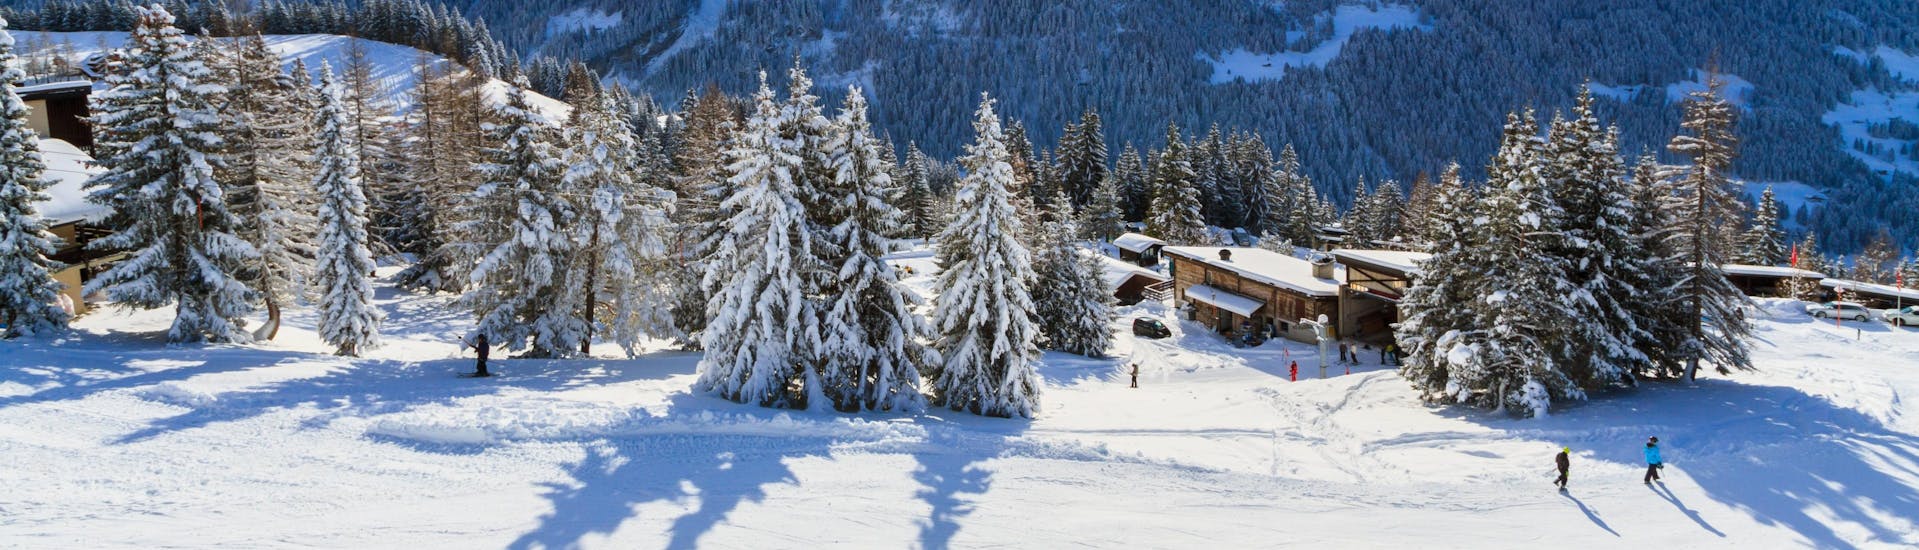 Ein Panoramablick auf die Skipisten und die umliegenden Berge von Villars-Bretaye, einem beliebten schweizer Skigebiet, in dem Besucher bei einer der örtlichen Skischulen einen Skikurs buchen können.